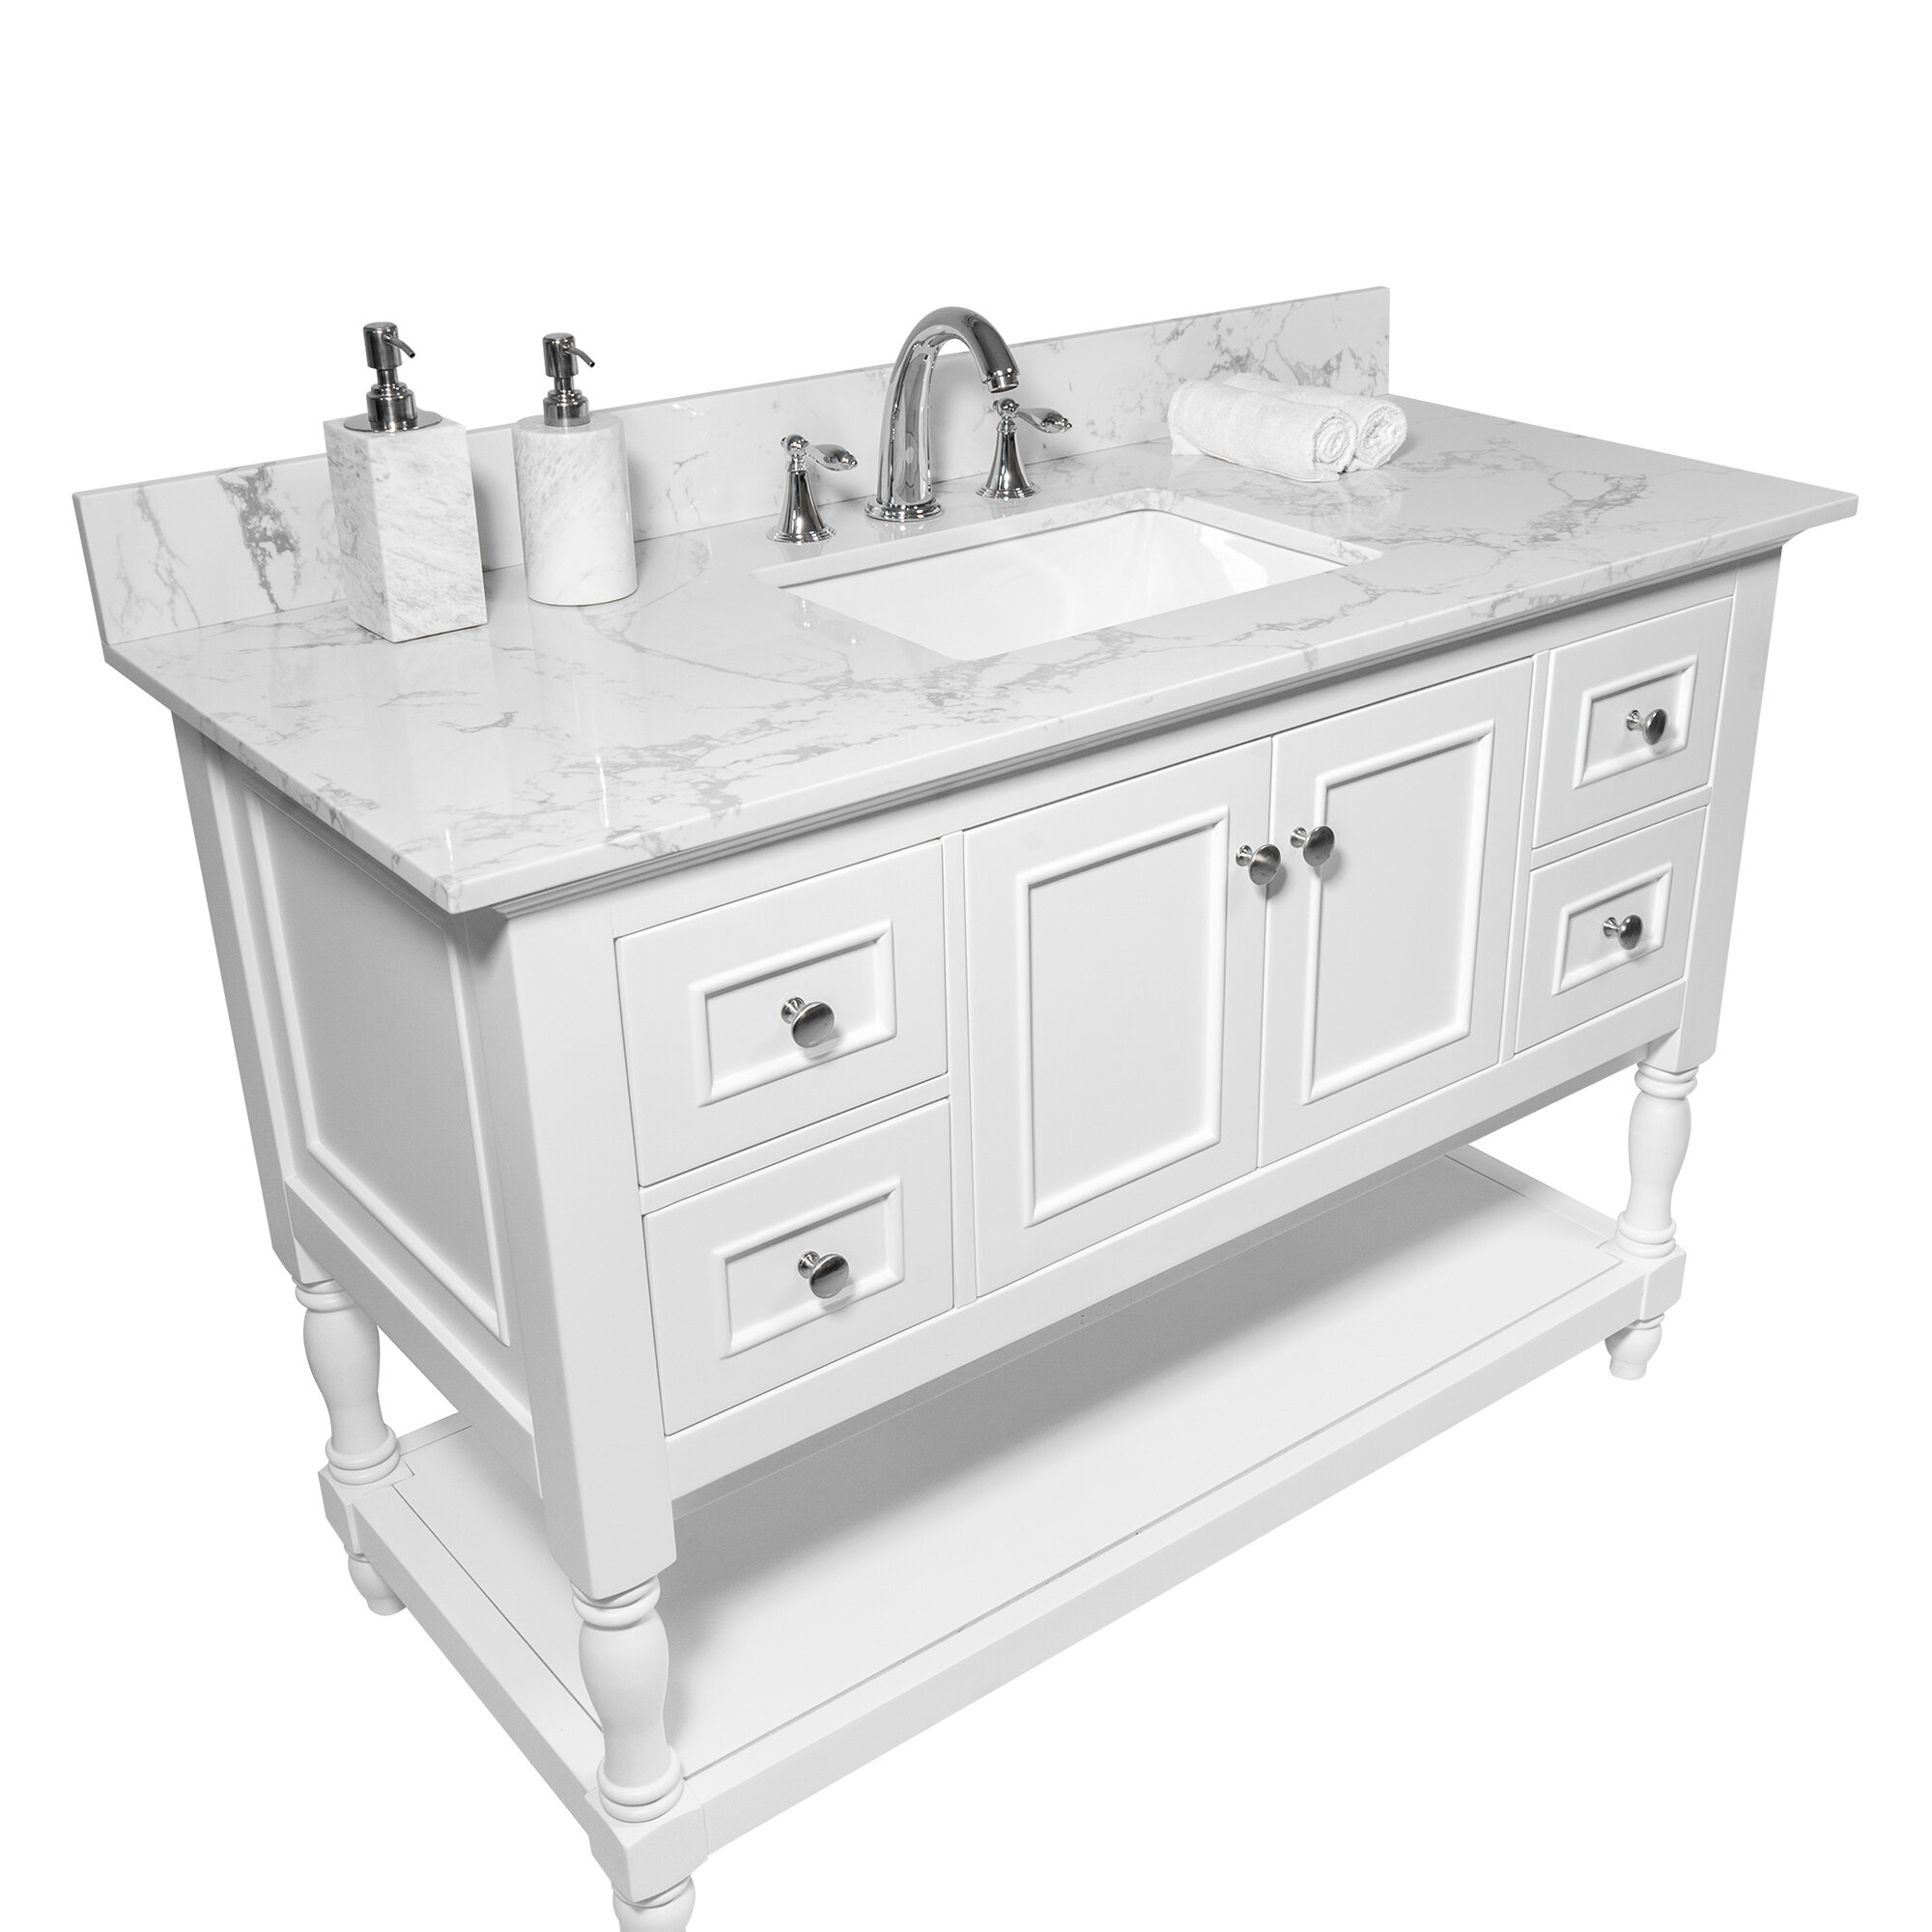 Watqen 43 Single Bathroom Vanity Top In White With Sink